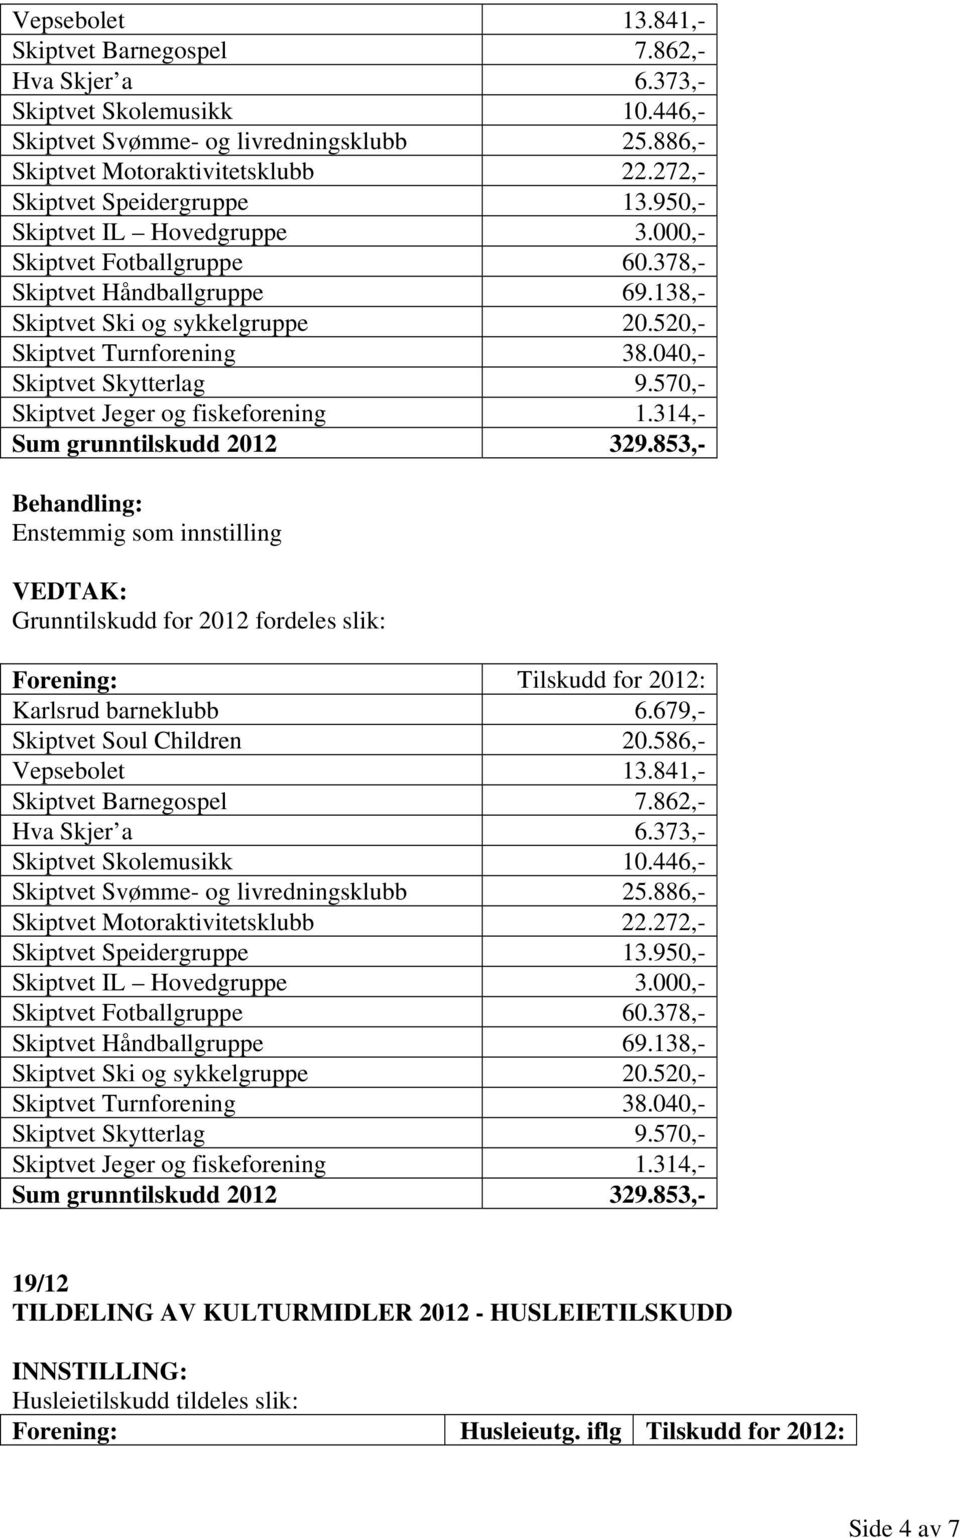 040,- Skiptvet Skytterlag 9.570,- Skiptvet Jeger og fiskeforening 1.314,- Sum grunntilskudd 2012 329.